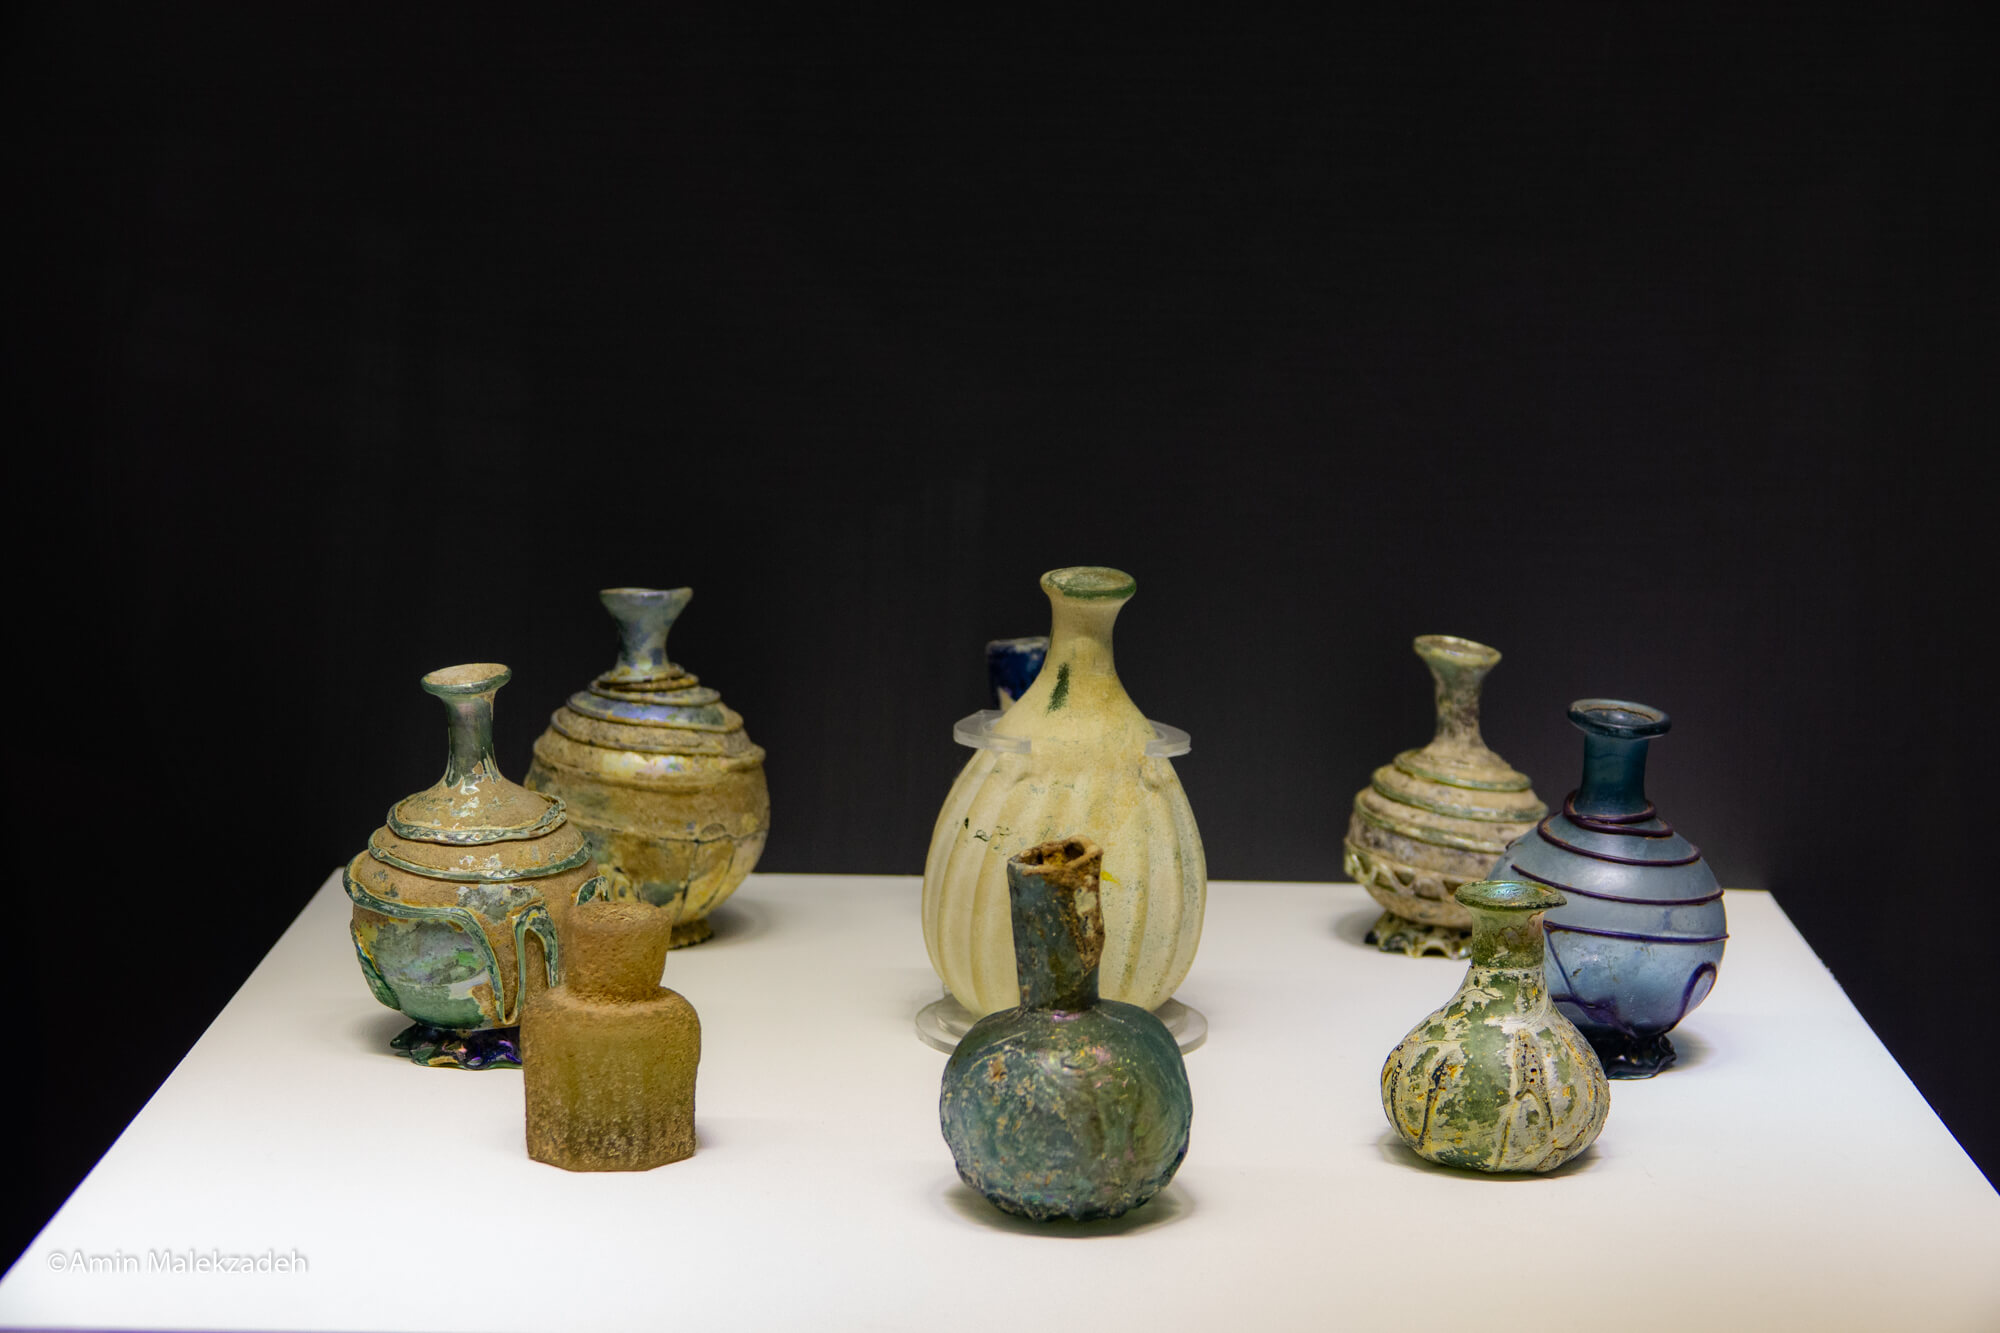 تعدادی از بطری های تزیینی شیشه ای موزه جندی شاپور